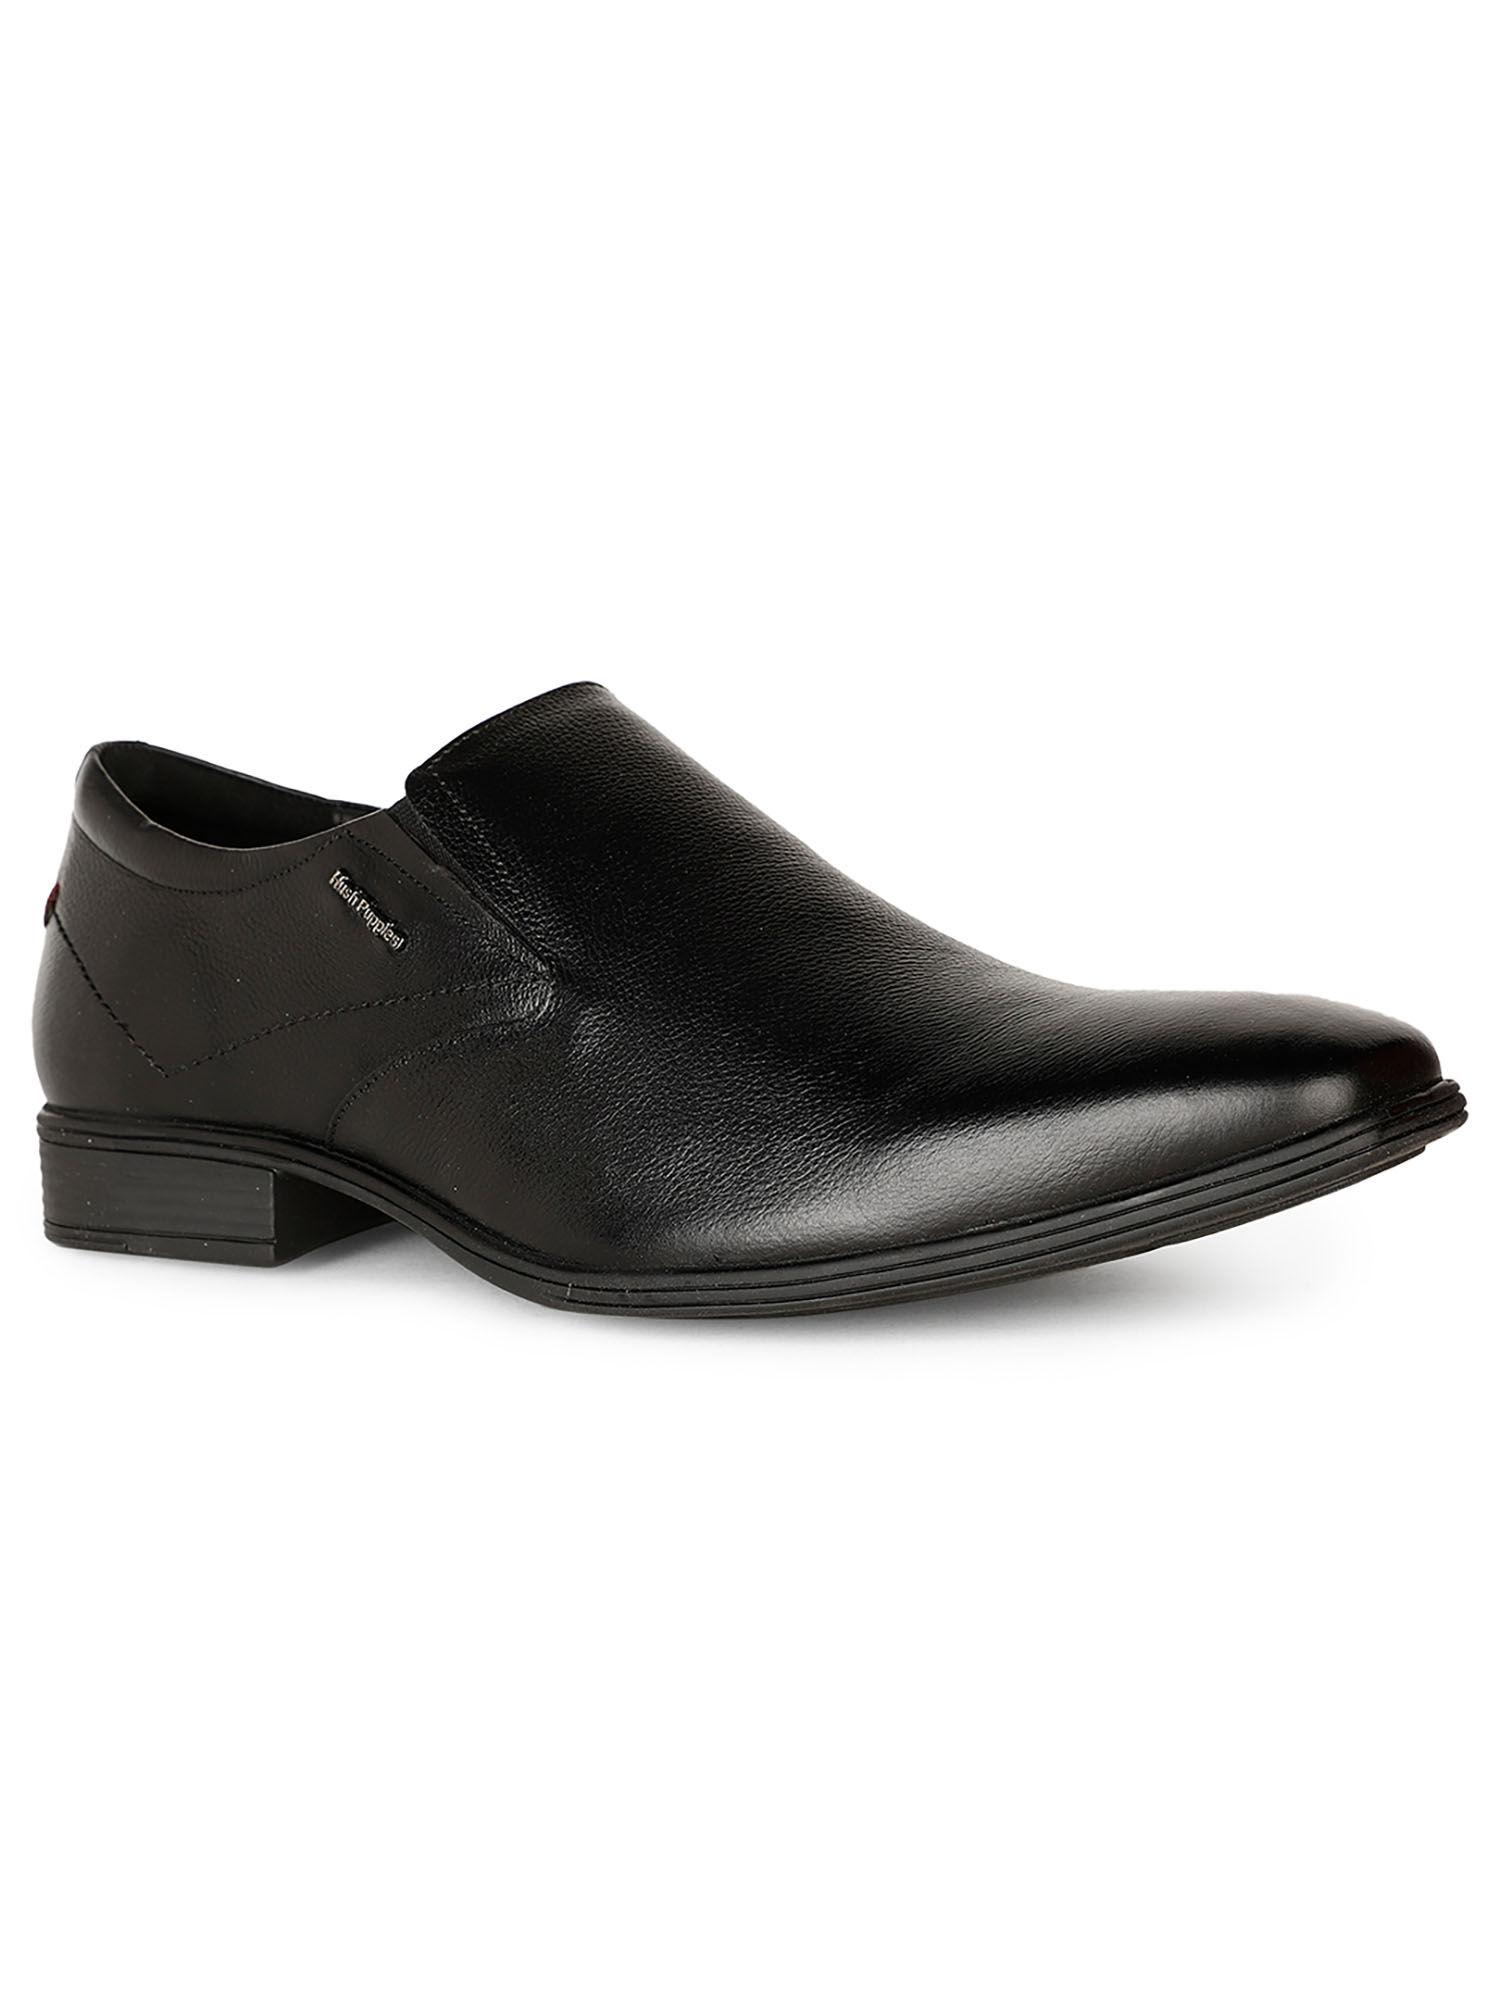 men-black-slip-on-formal-shoes